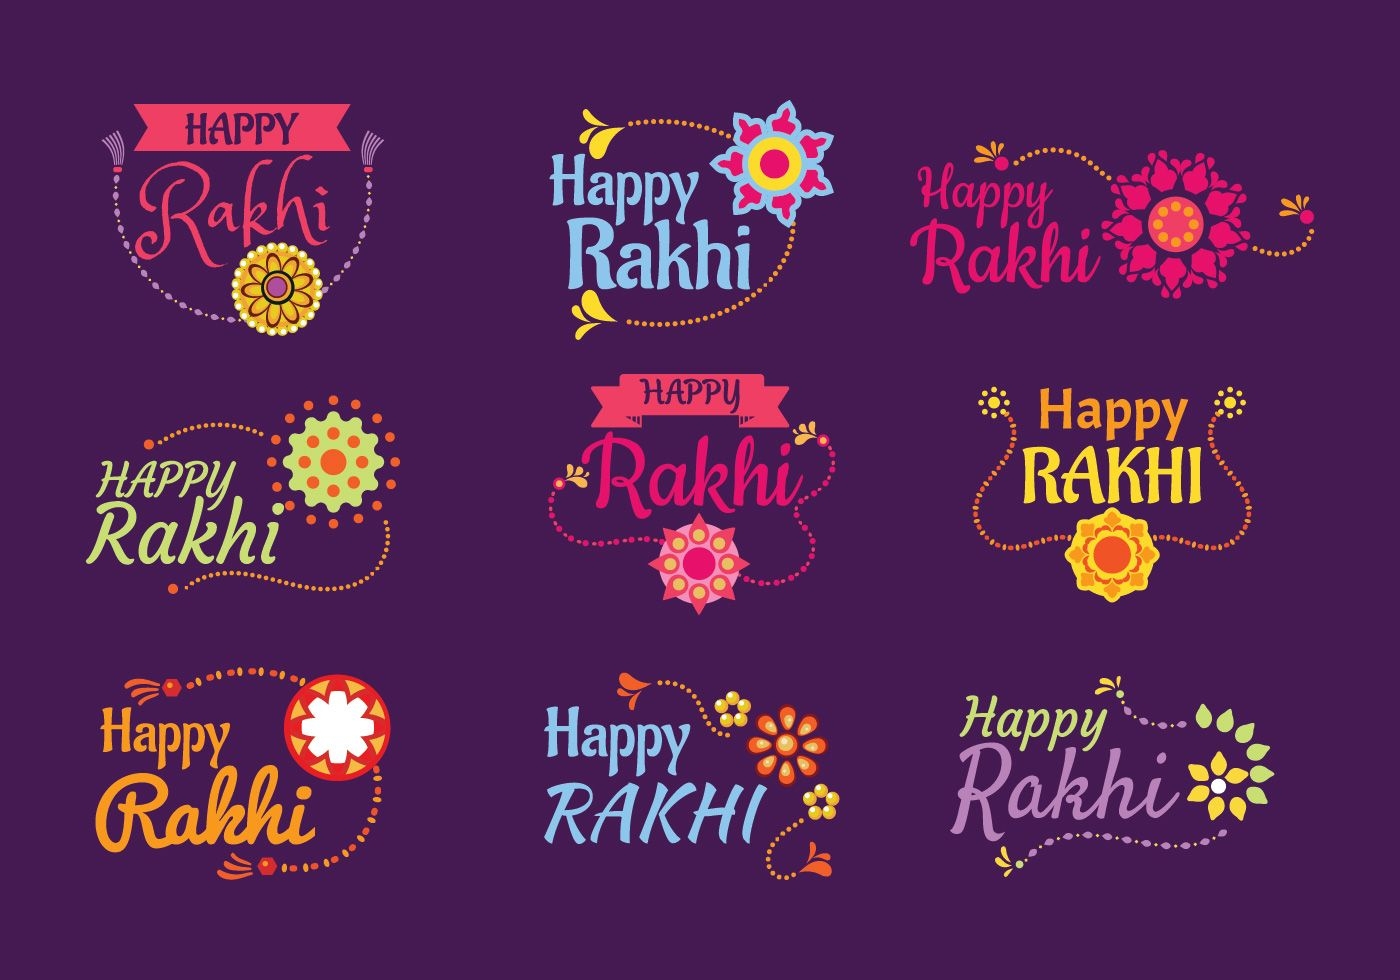 Download Set Of Emblem Happy Raksha Bandhan Or Happy Rakhi Indian Holiday Vector Art Choose From Over A Million Fr Happy Rakhi Happy Rakshabandhan Rakhi Cards - Free Online Printable Rakhi Cards